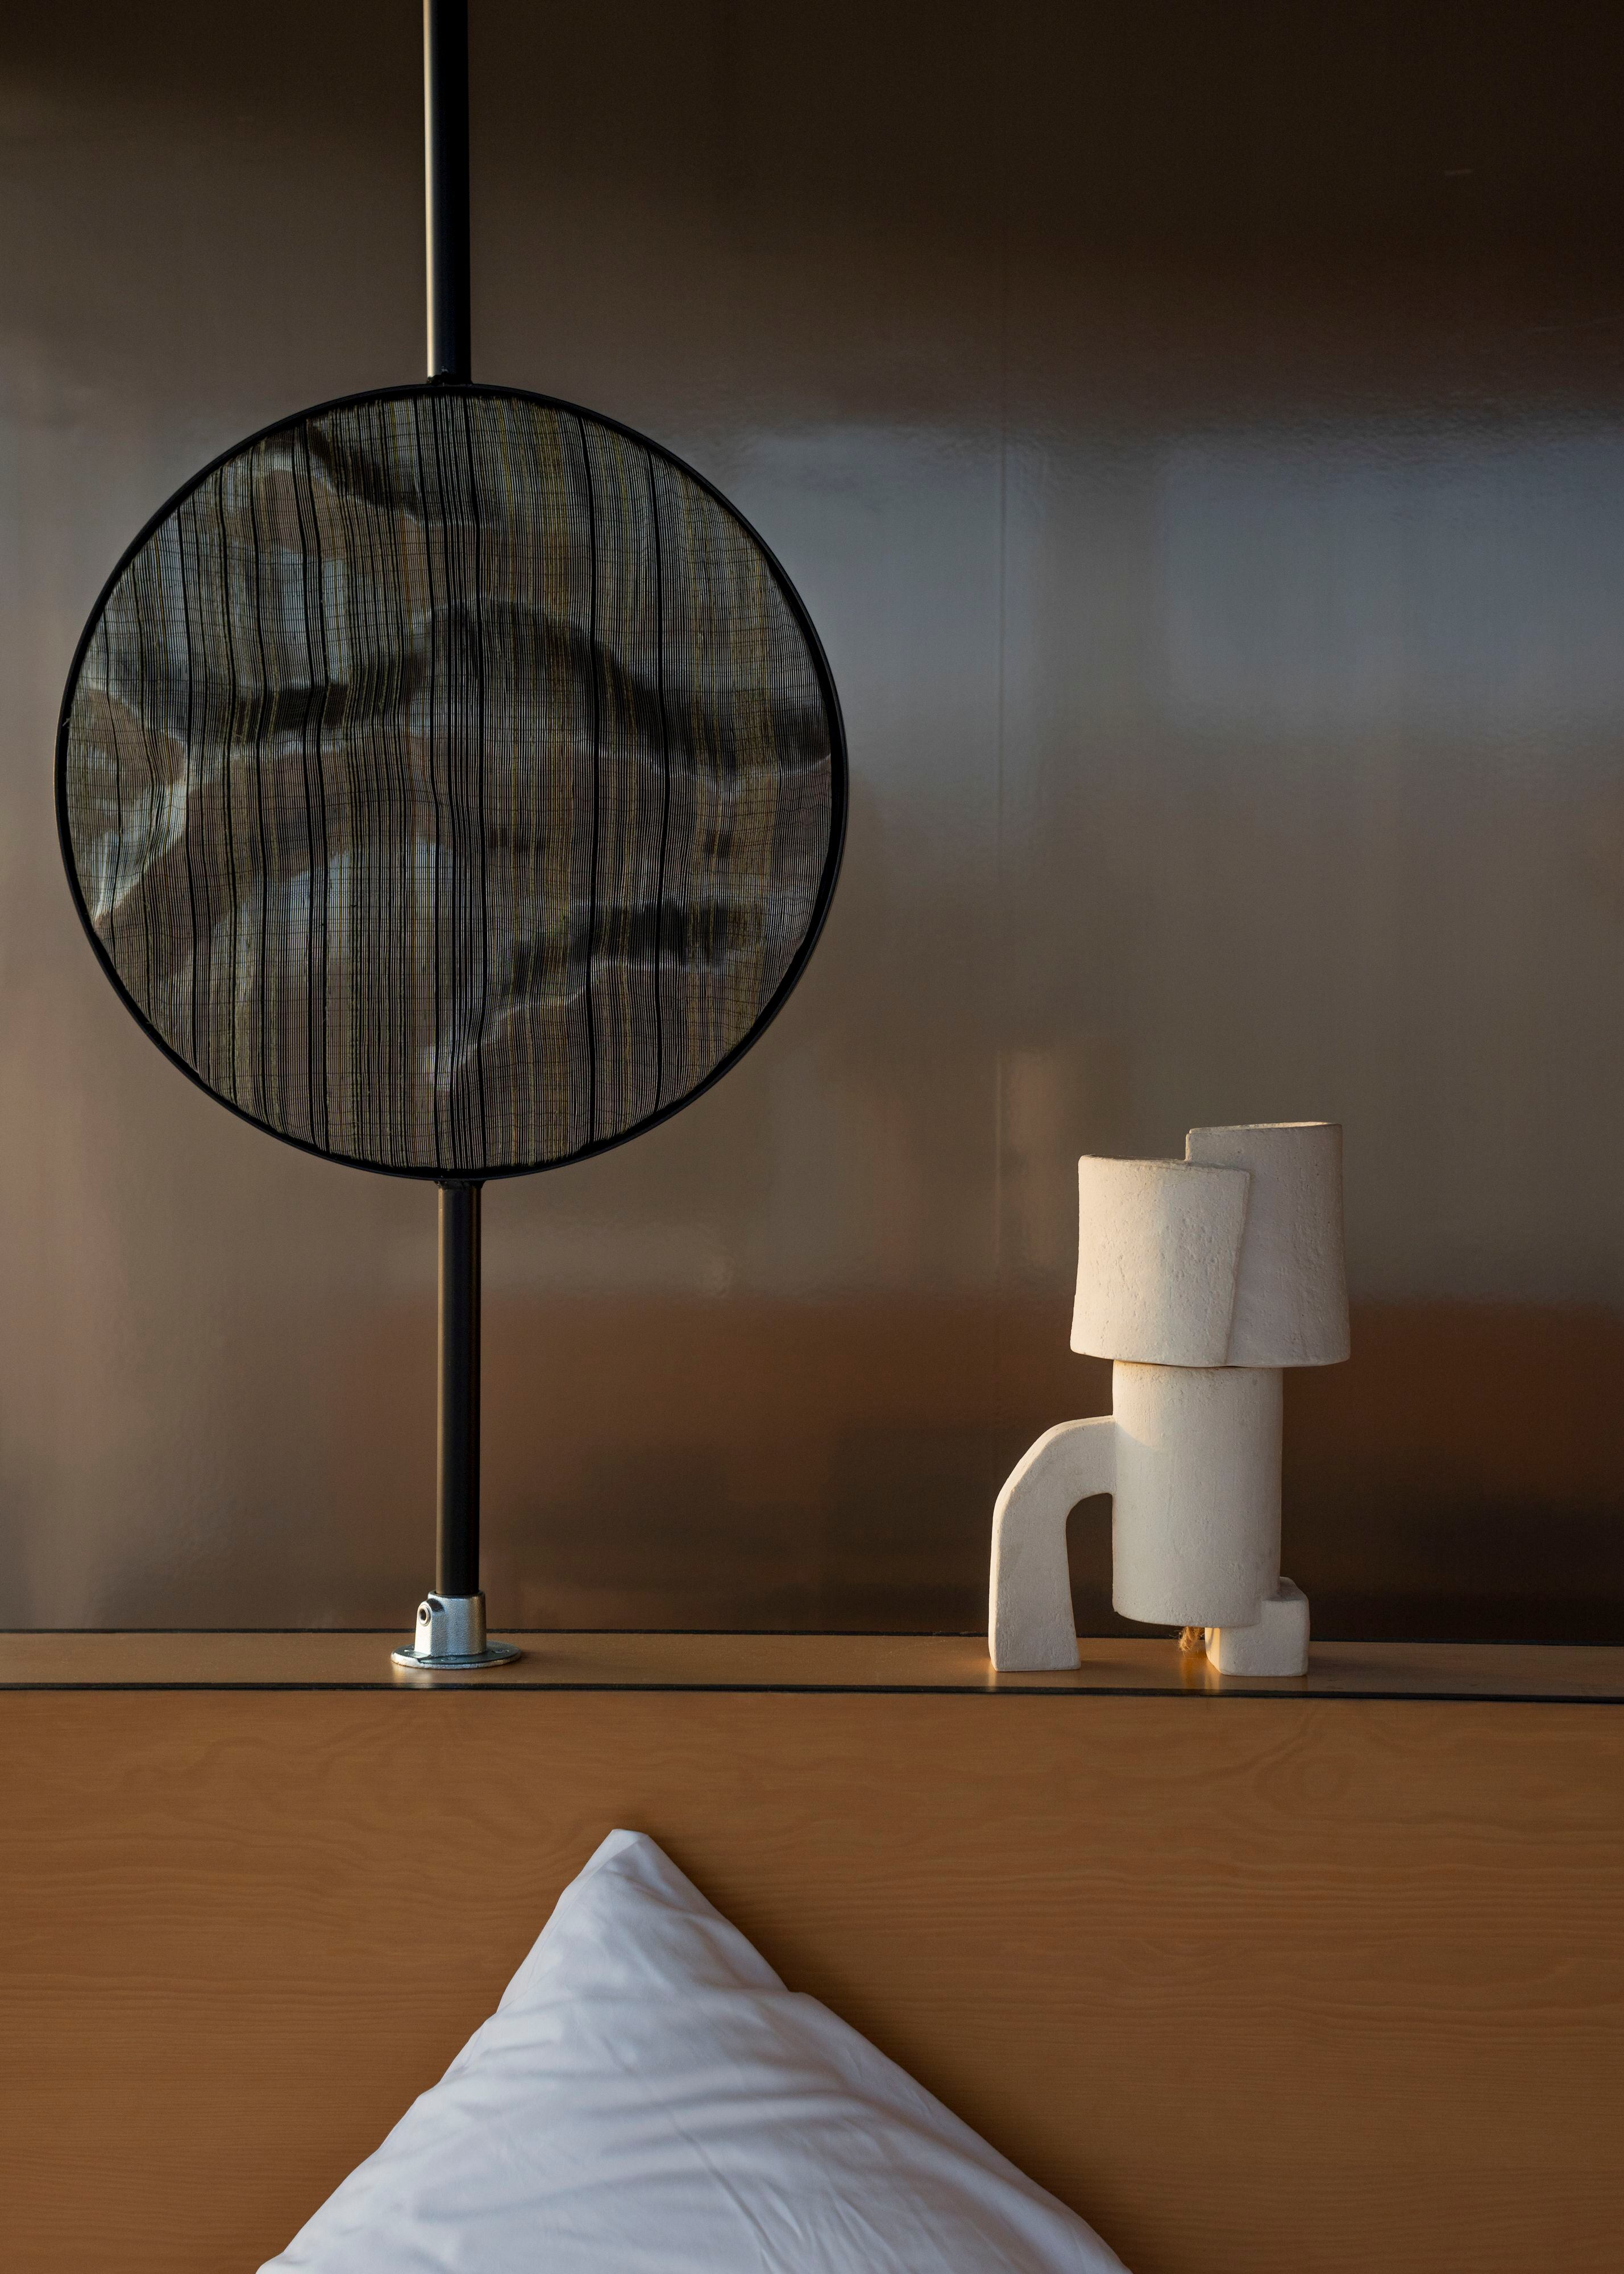 Las esculturas ornamentales de hilos de metal a manera de espejos de Adeline Halot y las lamparillas de mesa de Pascale Risbourg en colaboración con el Atelier Haute Cuisine crean atmósfera en las habitaciones del hotel.